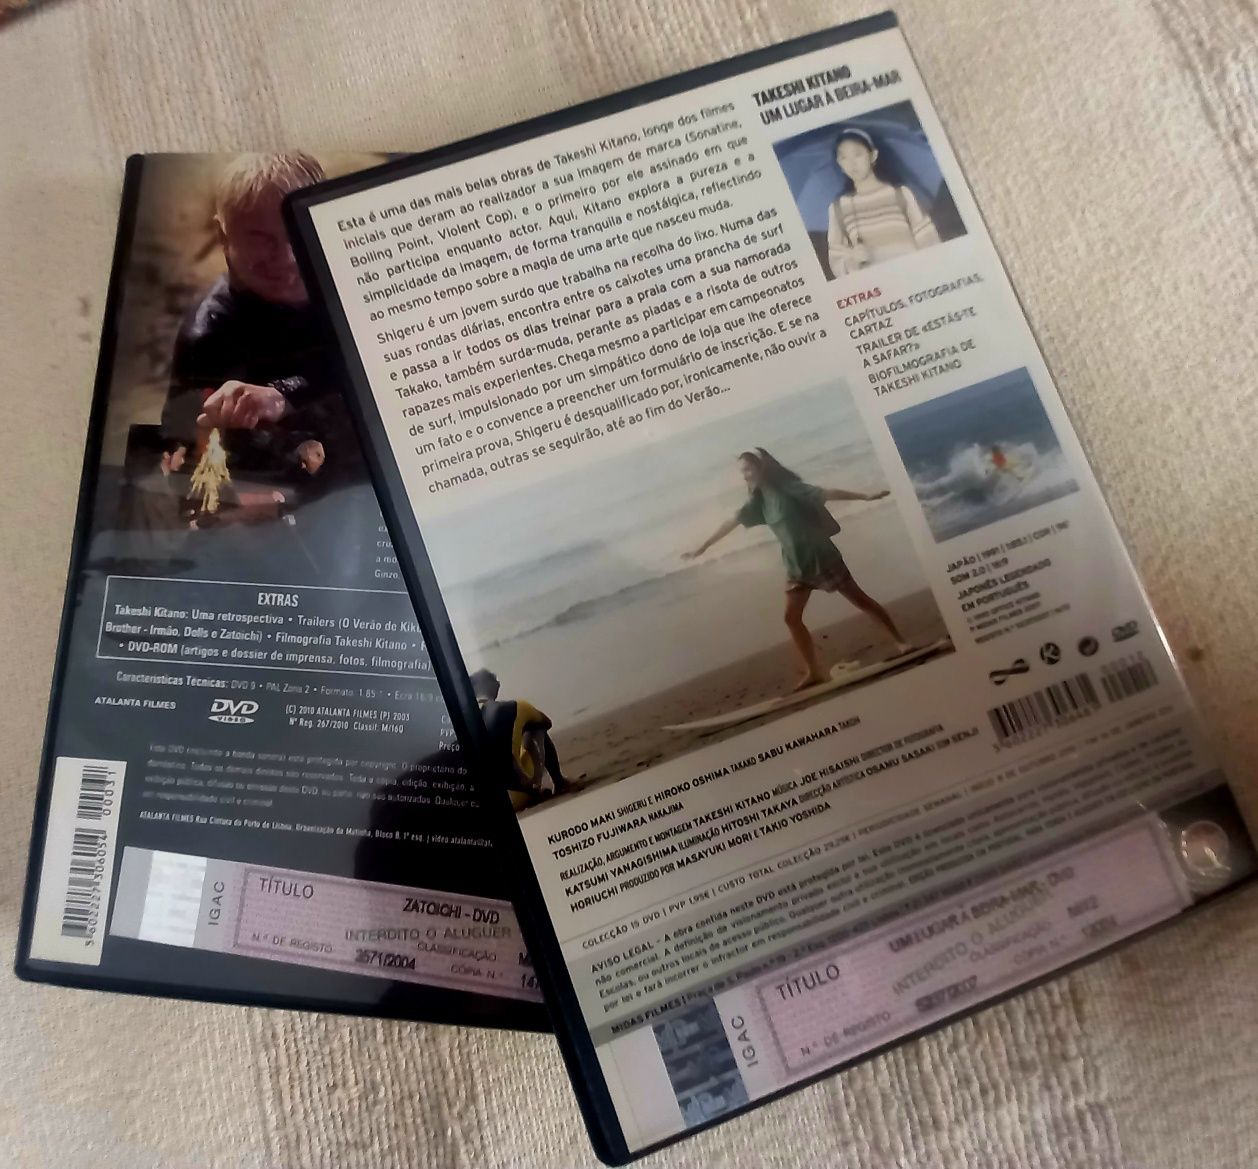 Dois filmes dvds de Takeshi Kitano